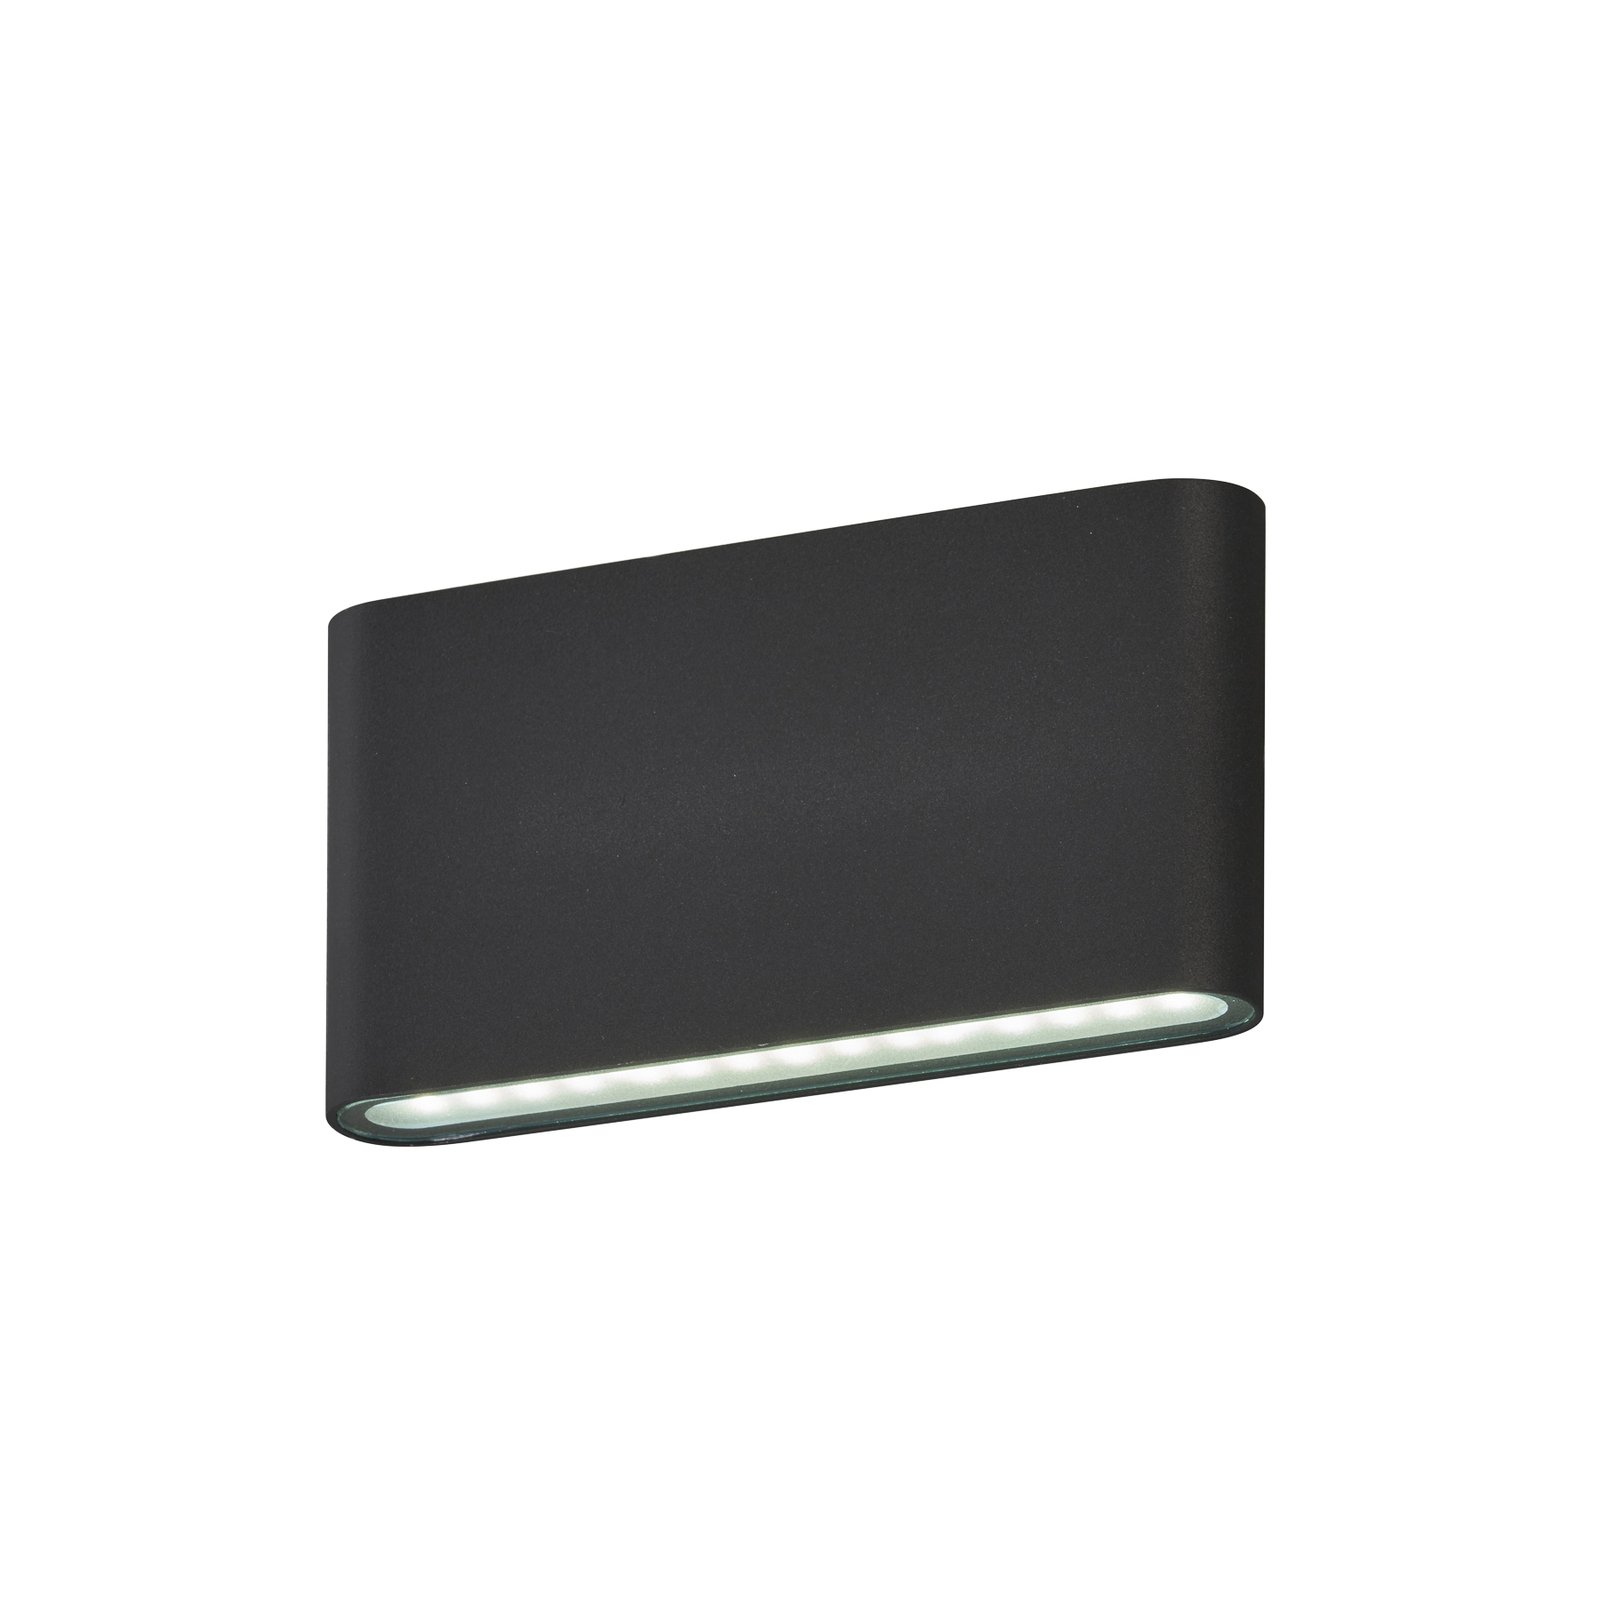 Venkovní nástěnné svítidlo Scone LED, černé, šířka 17,5 cm, 2 světla.